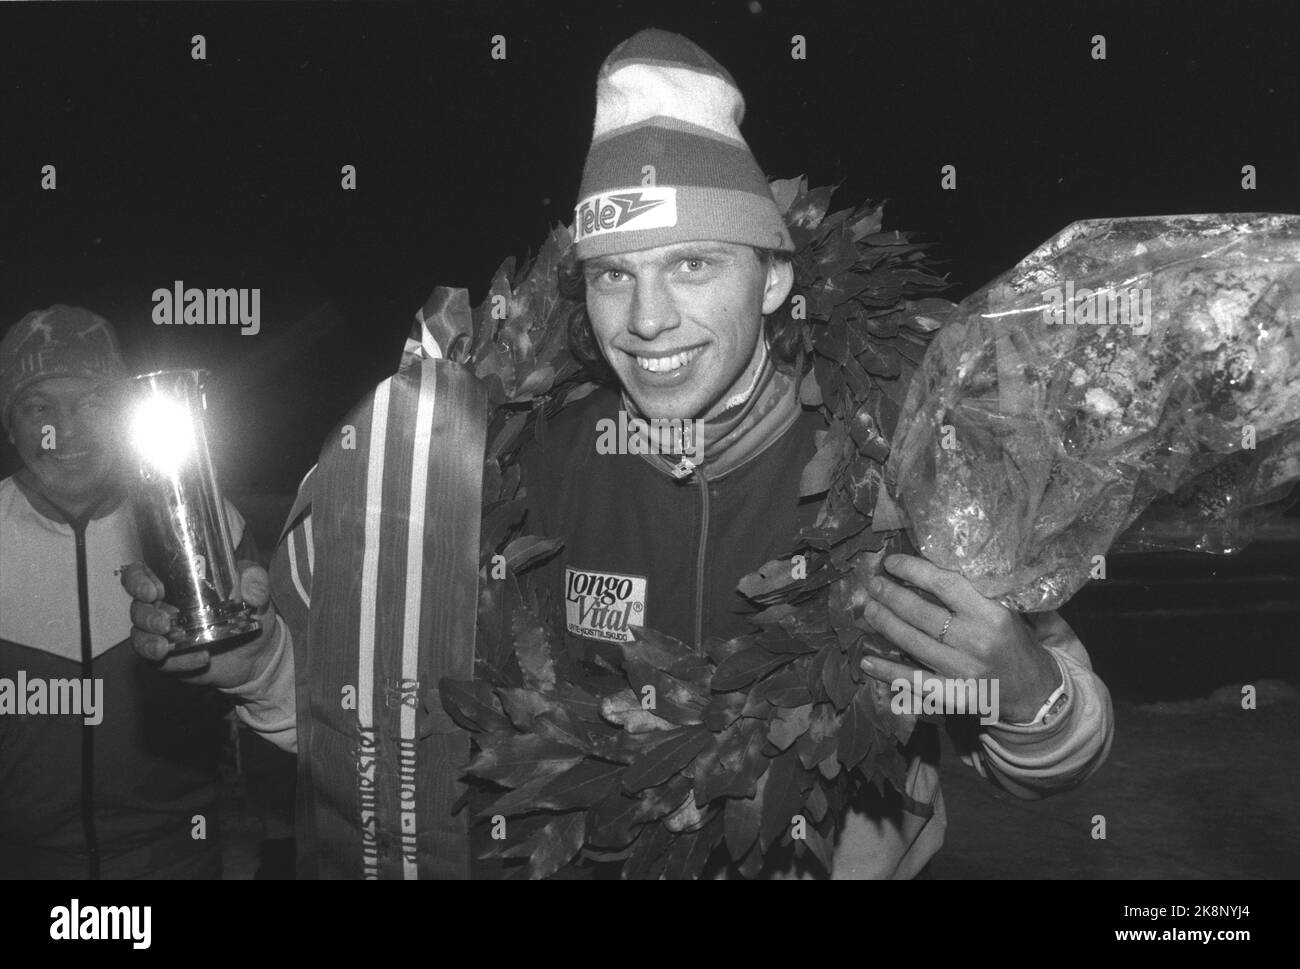 Jevnaker 19860112. NM-Skating, Männer. Hier ist ein glücklicher Skater Tom Erik Oxholm, der in der Gesamtwertung während der NM gewonnen hat. Hier vom Siegerpodest mit Lorbeerkranz und Trophäe. Foto: Inge Gjellesvik NTB / NTB Stockfoto